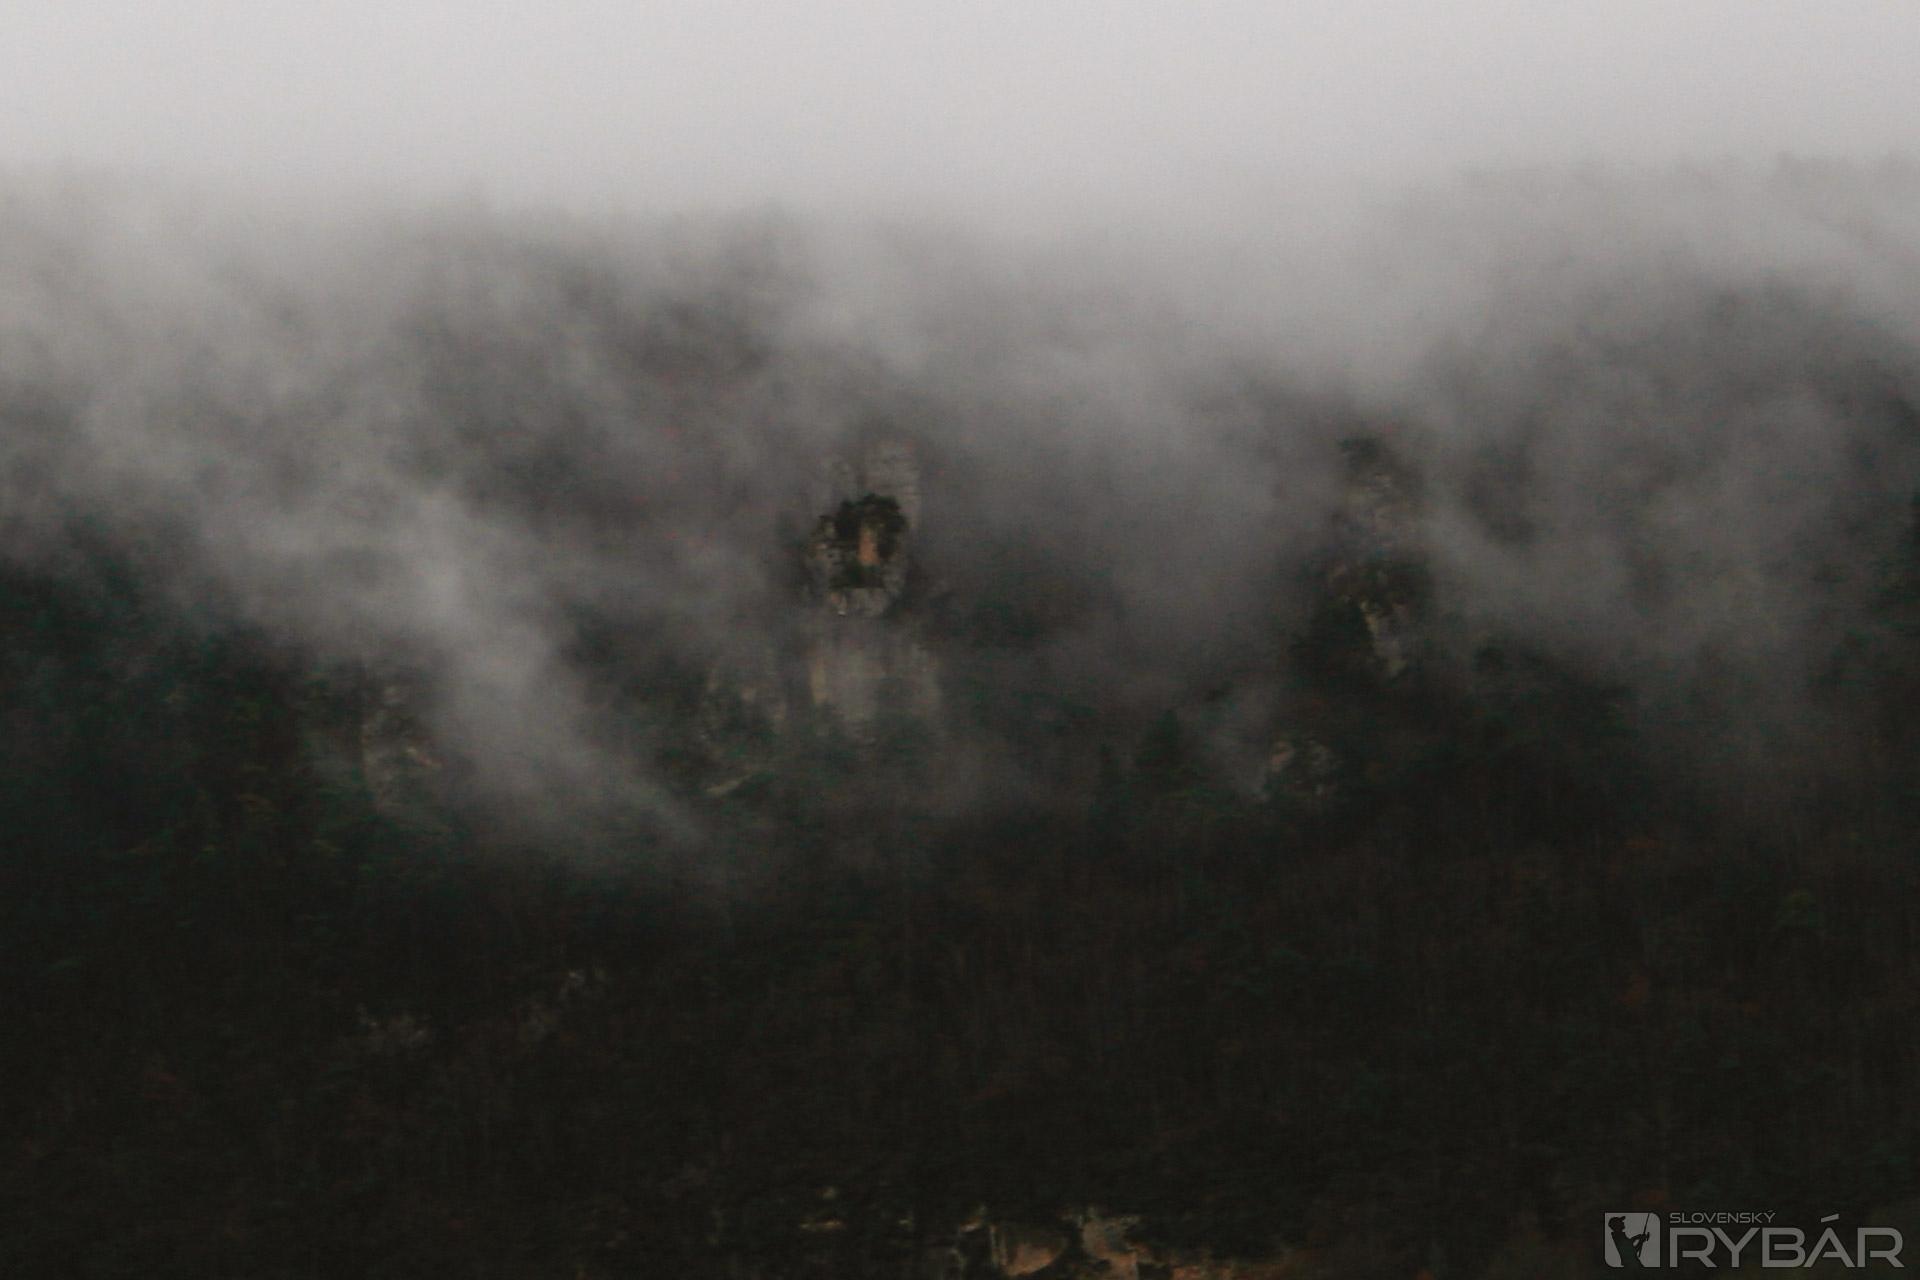 Z hmly sa vynárajú obrysy kamenných tvárí. Akoby mlčky hľadeli do údolia...